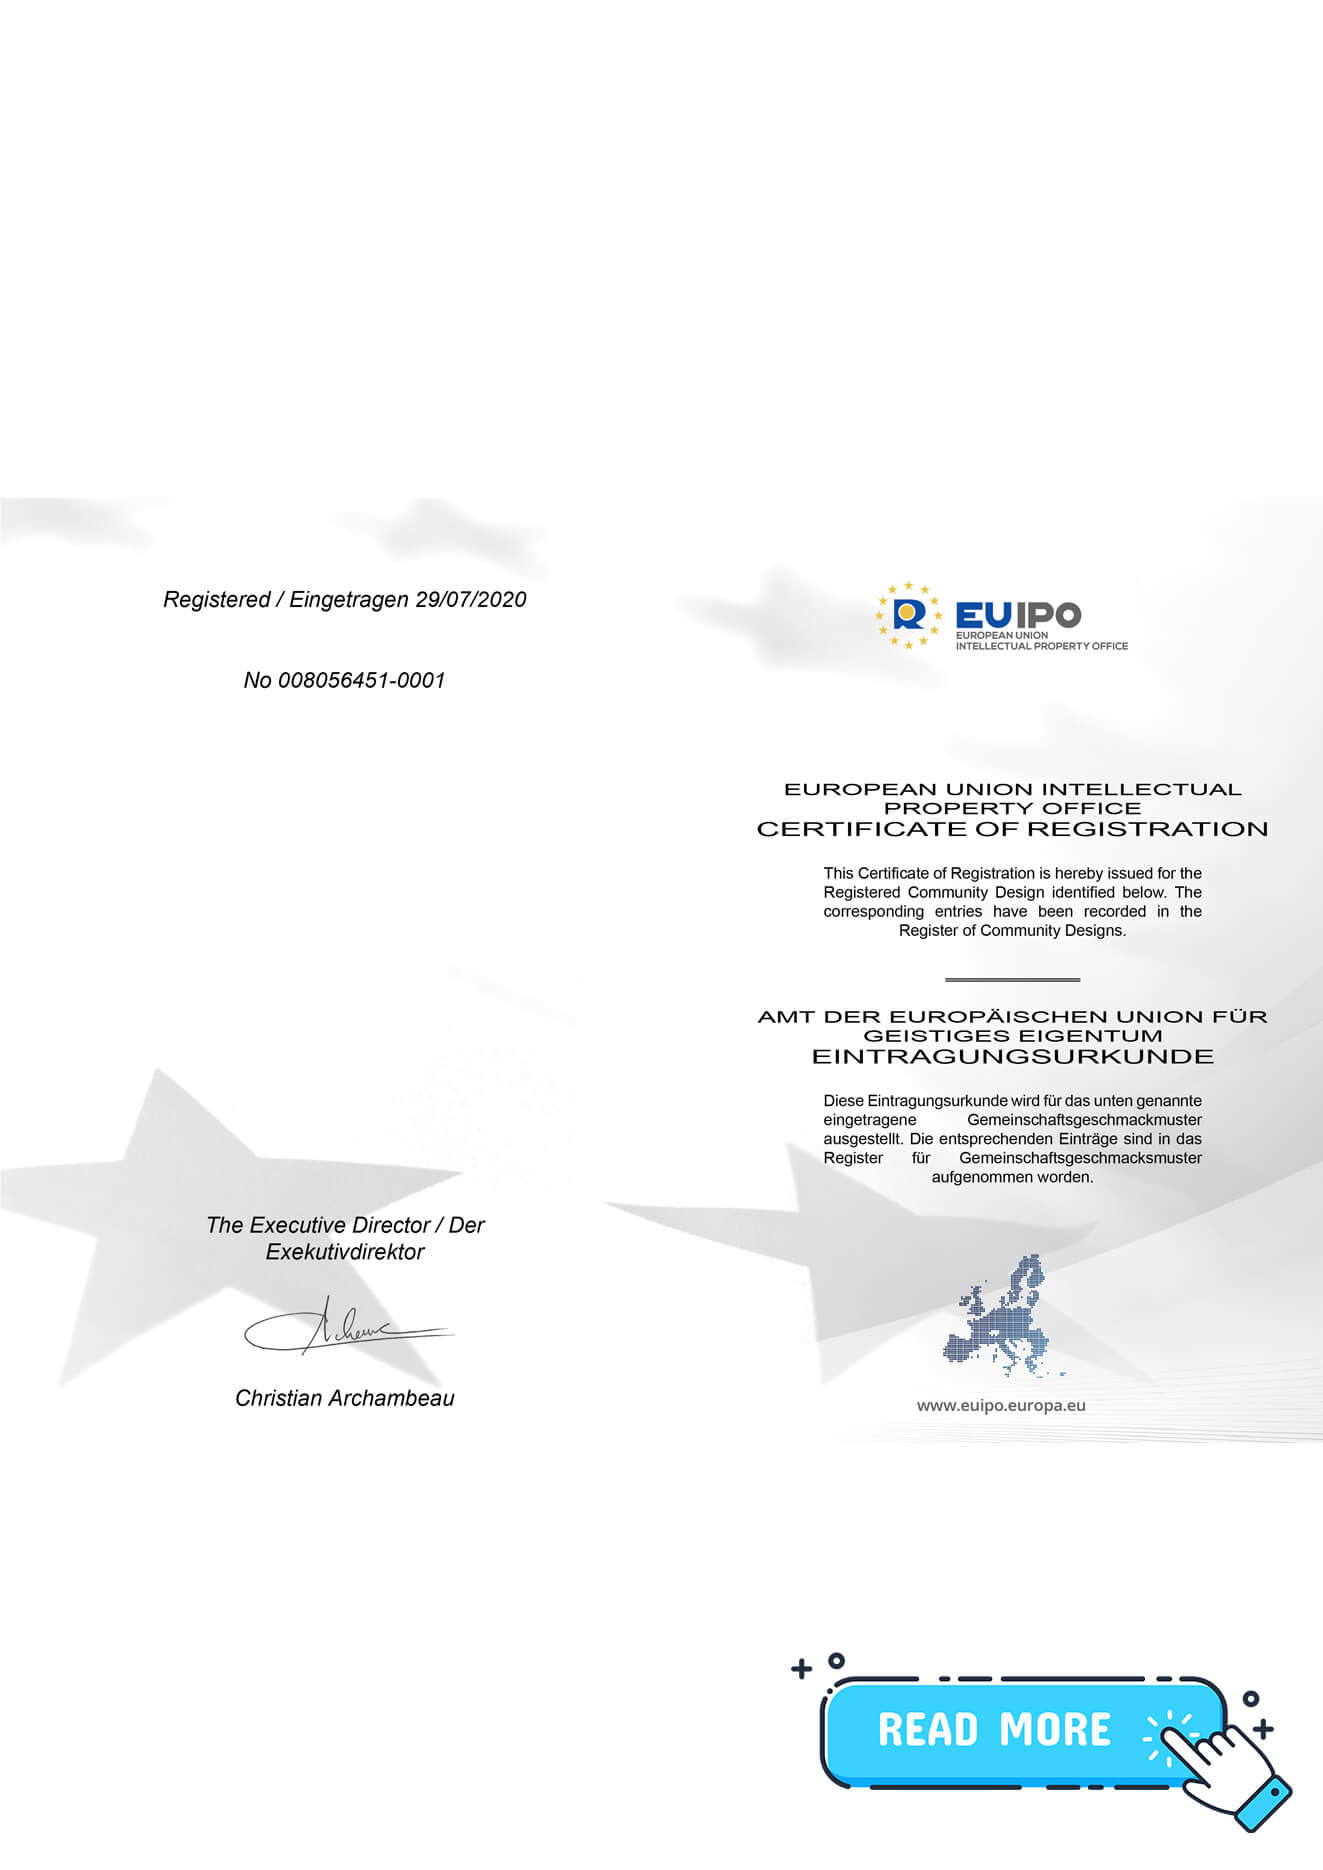 European Union Patent